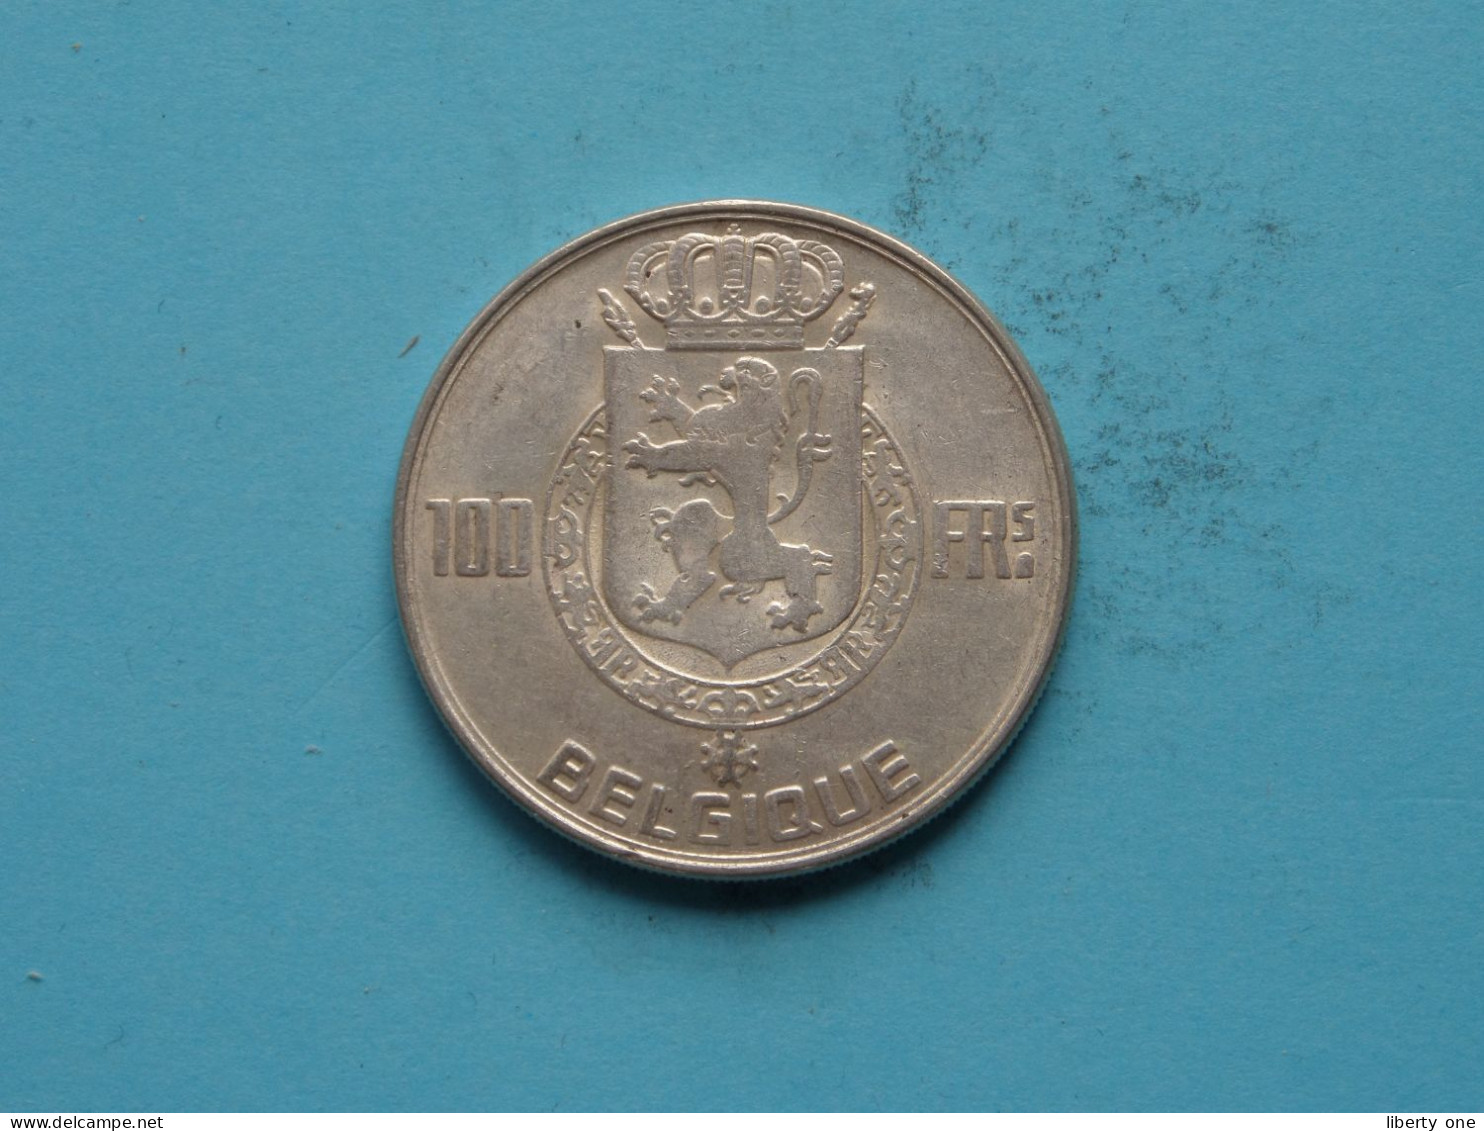 100 Francs > 1950 FR ( Zie / Voir / See > DETAIL > SCANS ) Uncleaned ! - 100 Francs